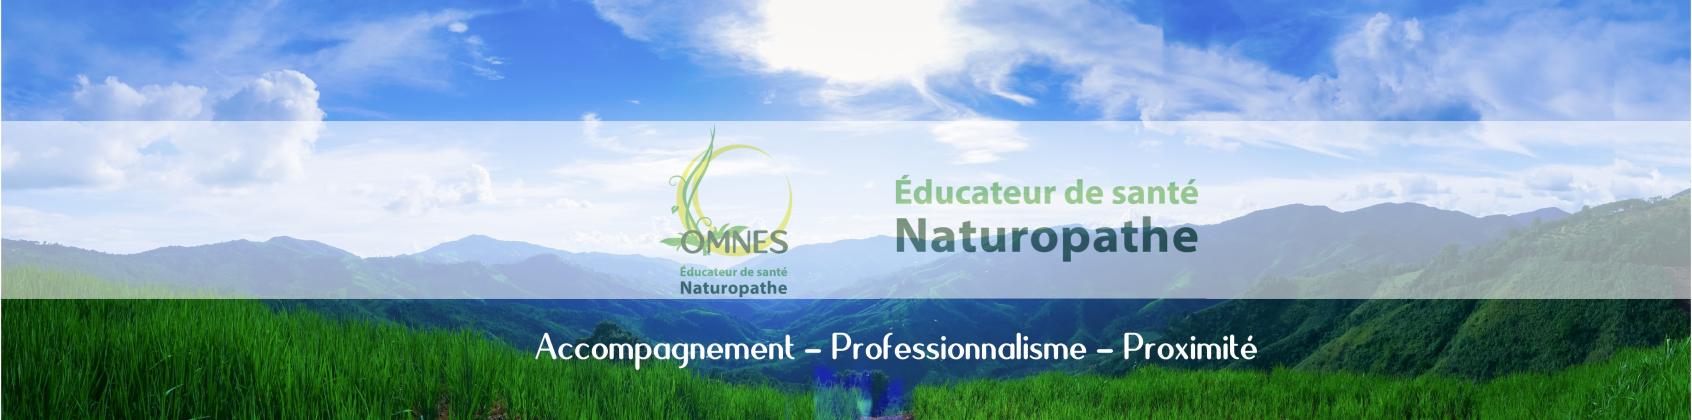 Educateur de santé naturopathe OMNES